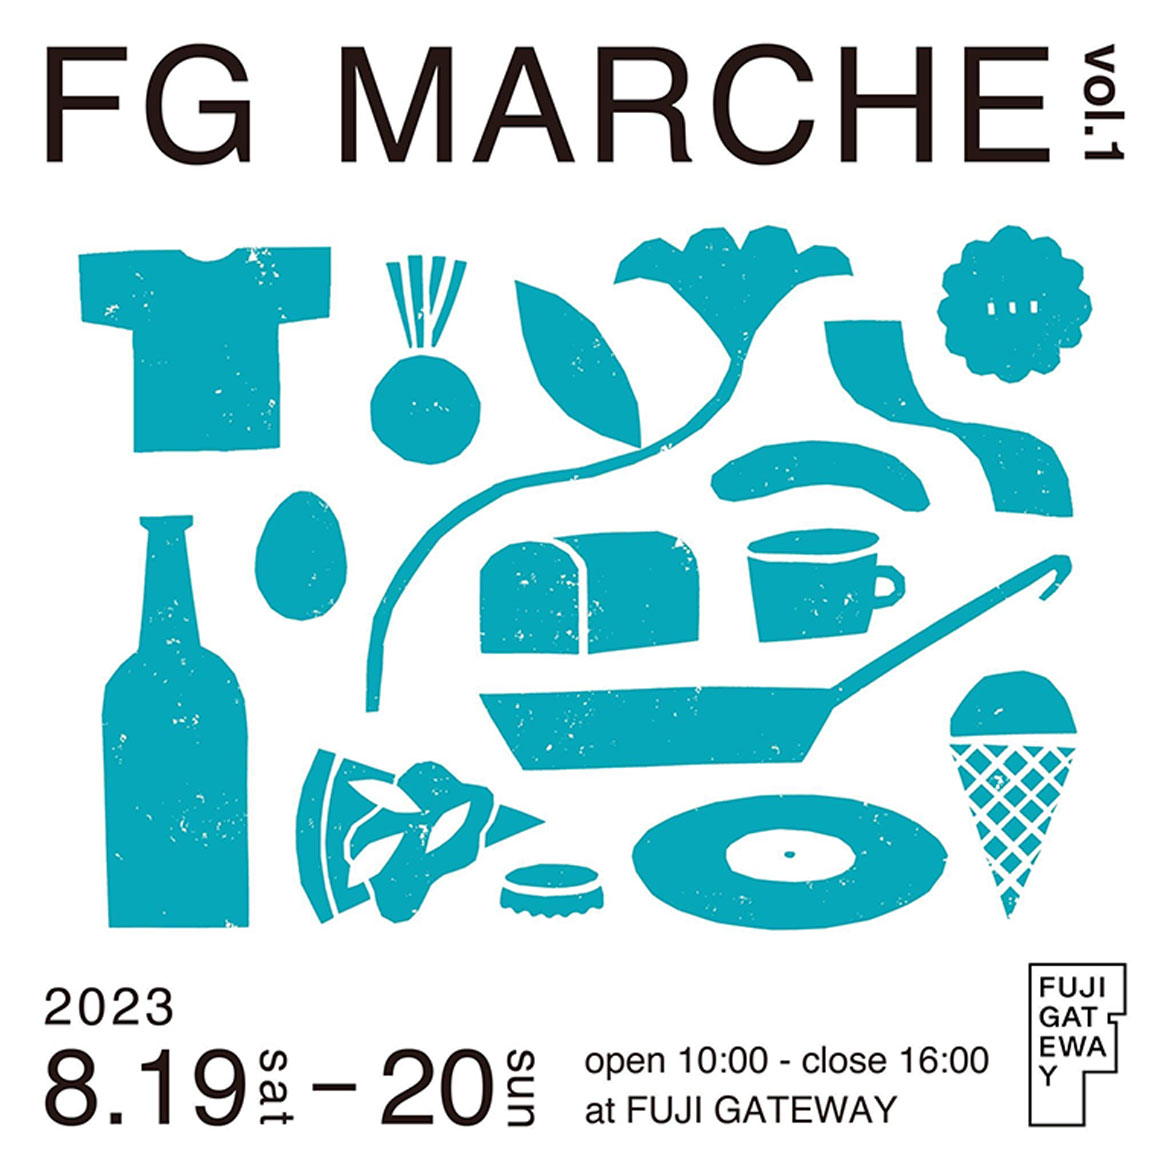 自然の中で楽しむ富士山麓のマルシェ「FG MARCHE」。FUJI GATEWAYにて8/19・20開催